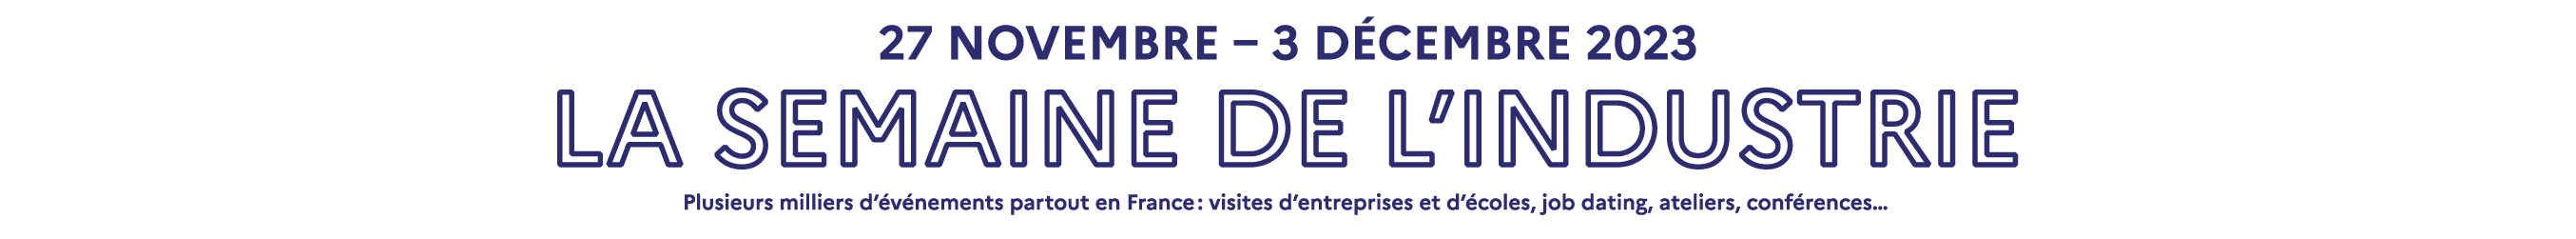 27 novembre - 3 décembre 2023, La Semaine de l'industrie, Plusieurs milliers d'événements partout en France : visites d'entreprises et d'écoles, job dating, ateliers, conférences...